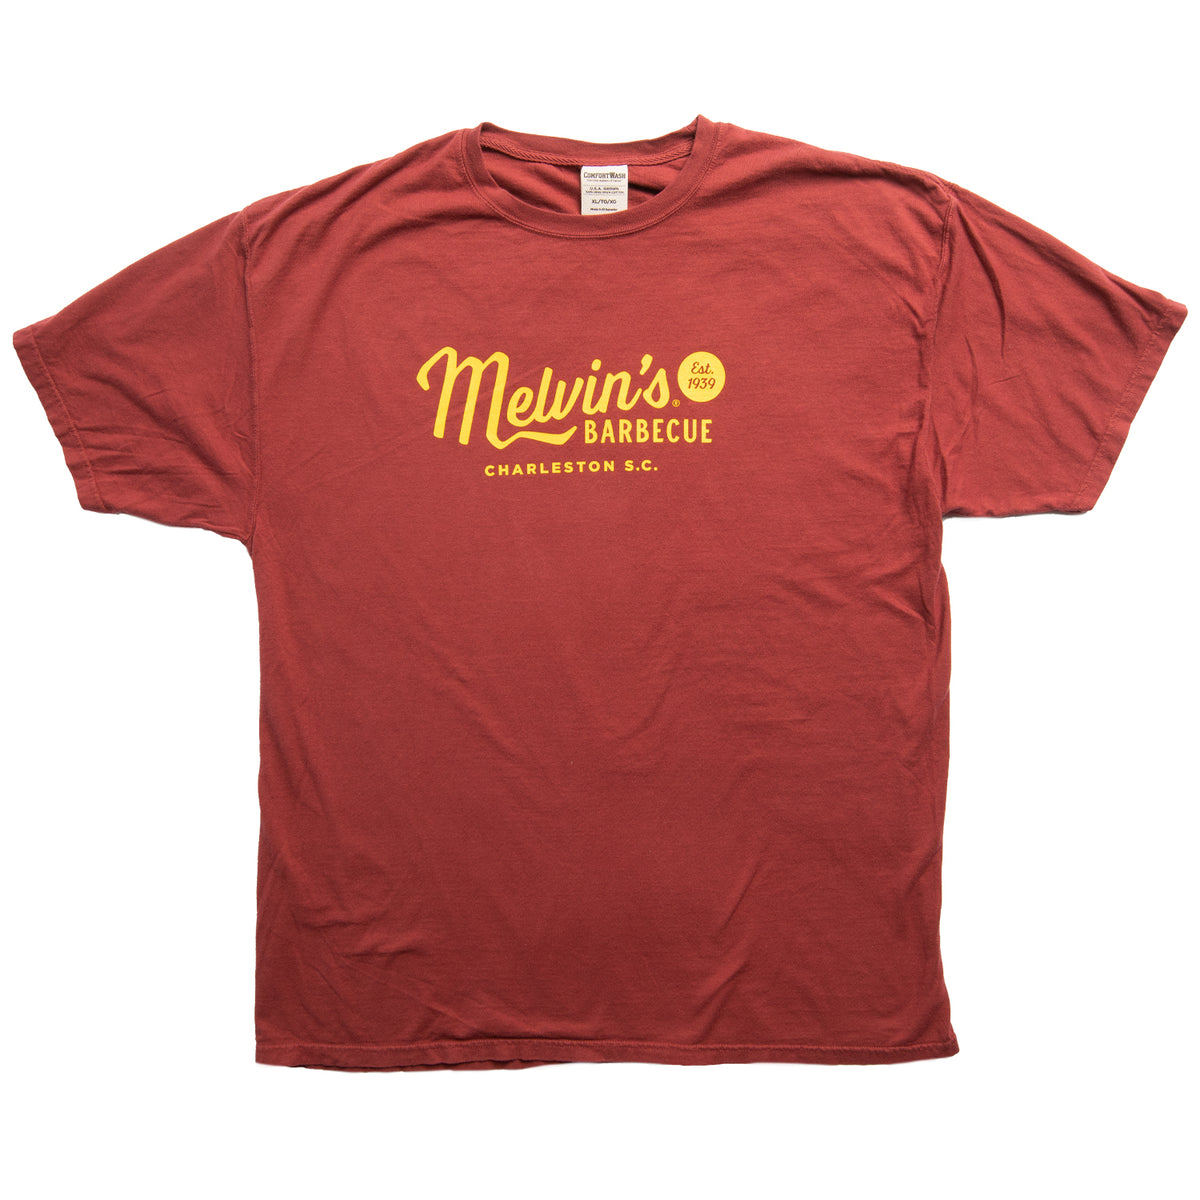 melvin's legendary red t-shirt